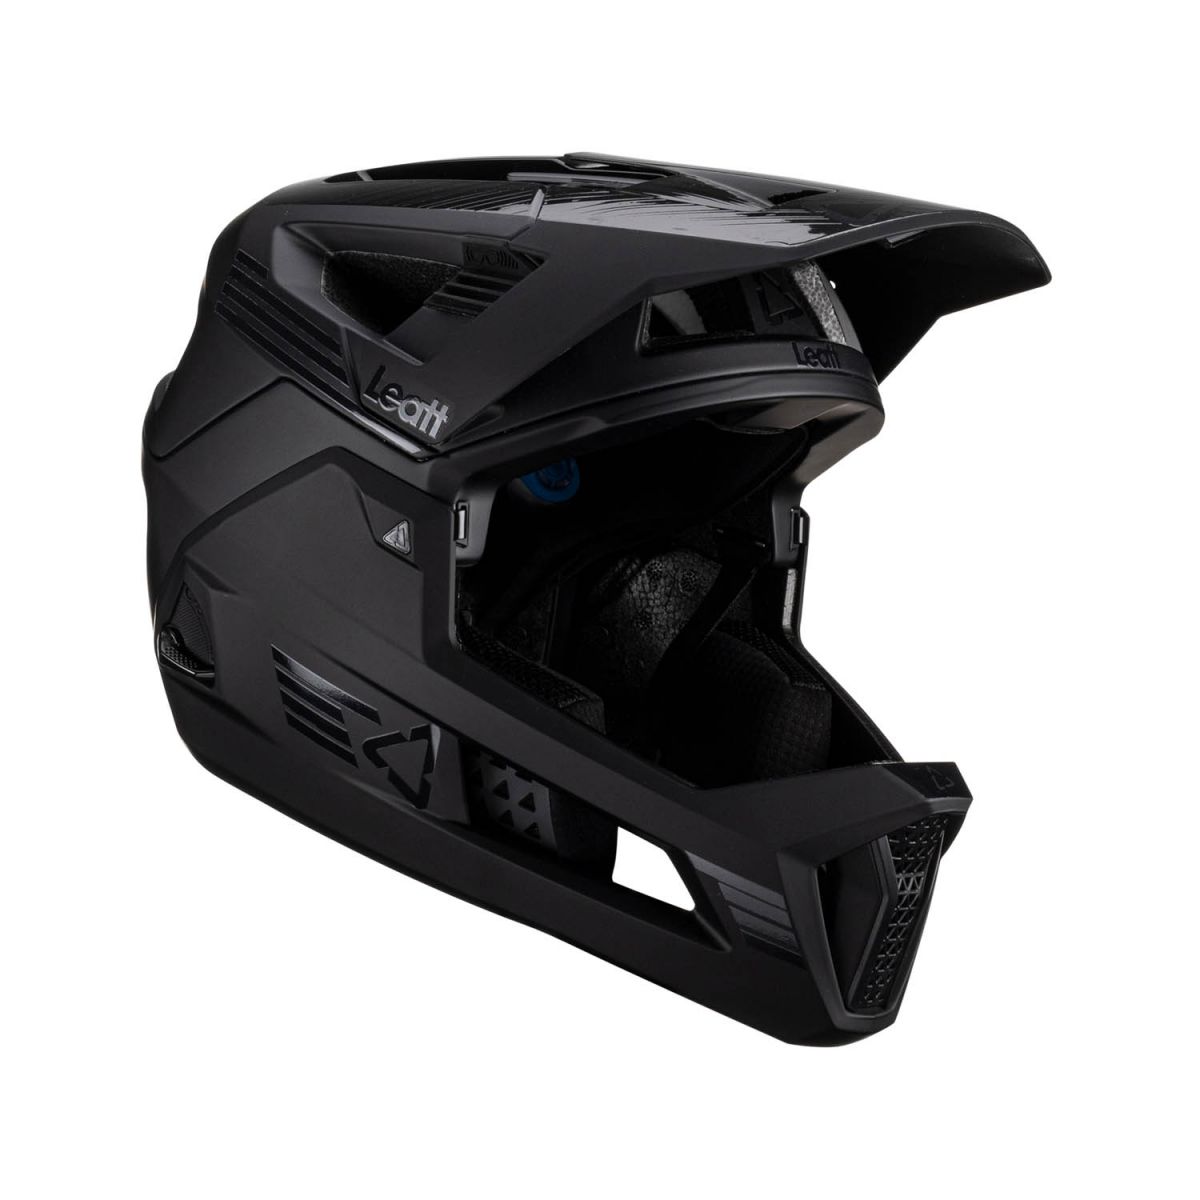 Casco Integral de enduro ligero con mentonera desmontable Leatt Enduro 4.0 V24 en color negro